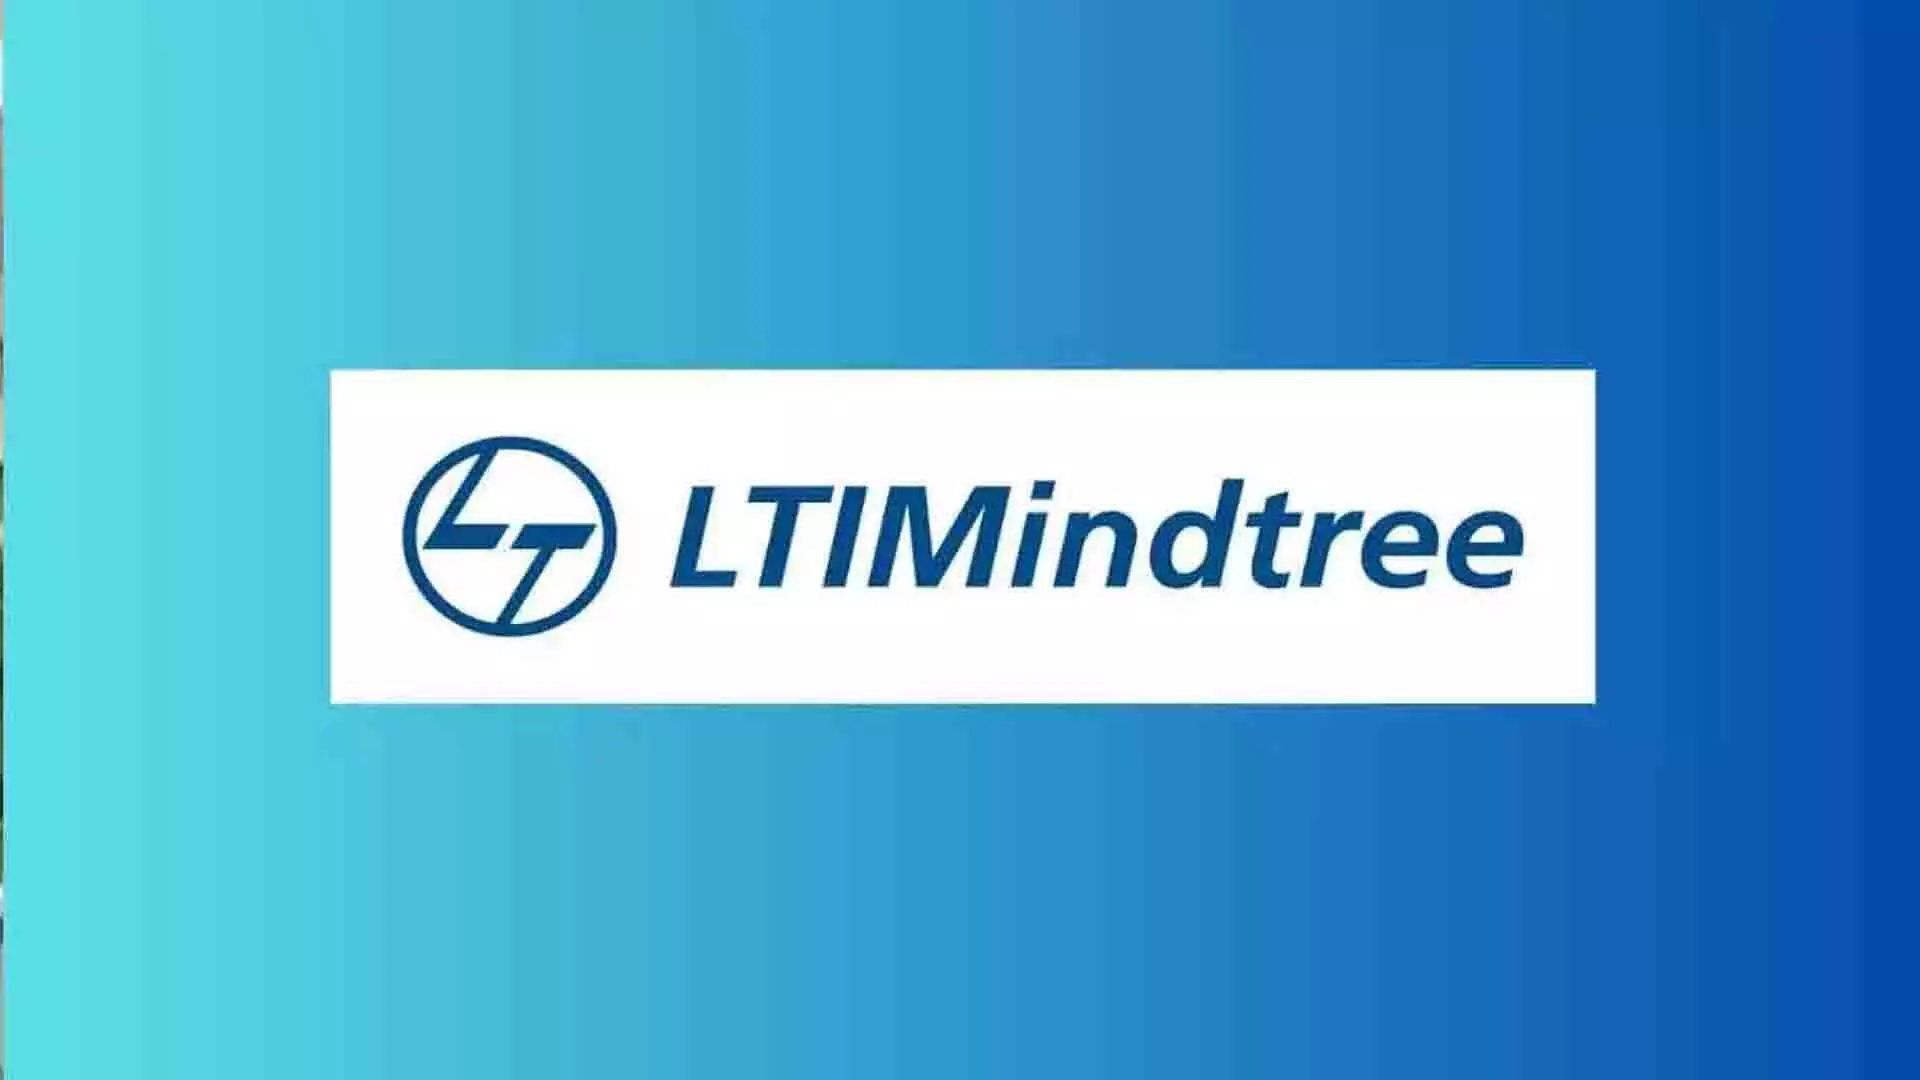 LTIMindtree ने विपुल चंद्रा को मुख्य वित्तीय अधिकारी नियुक्त किया